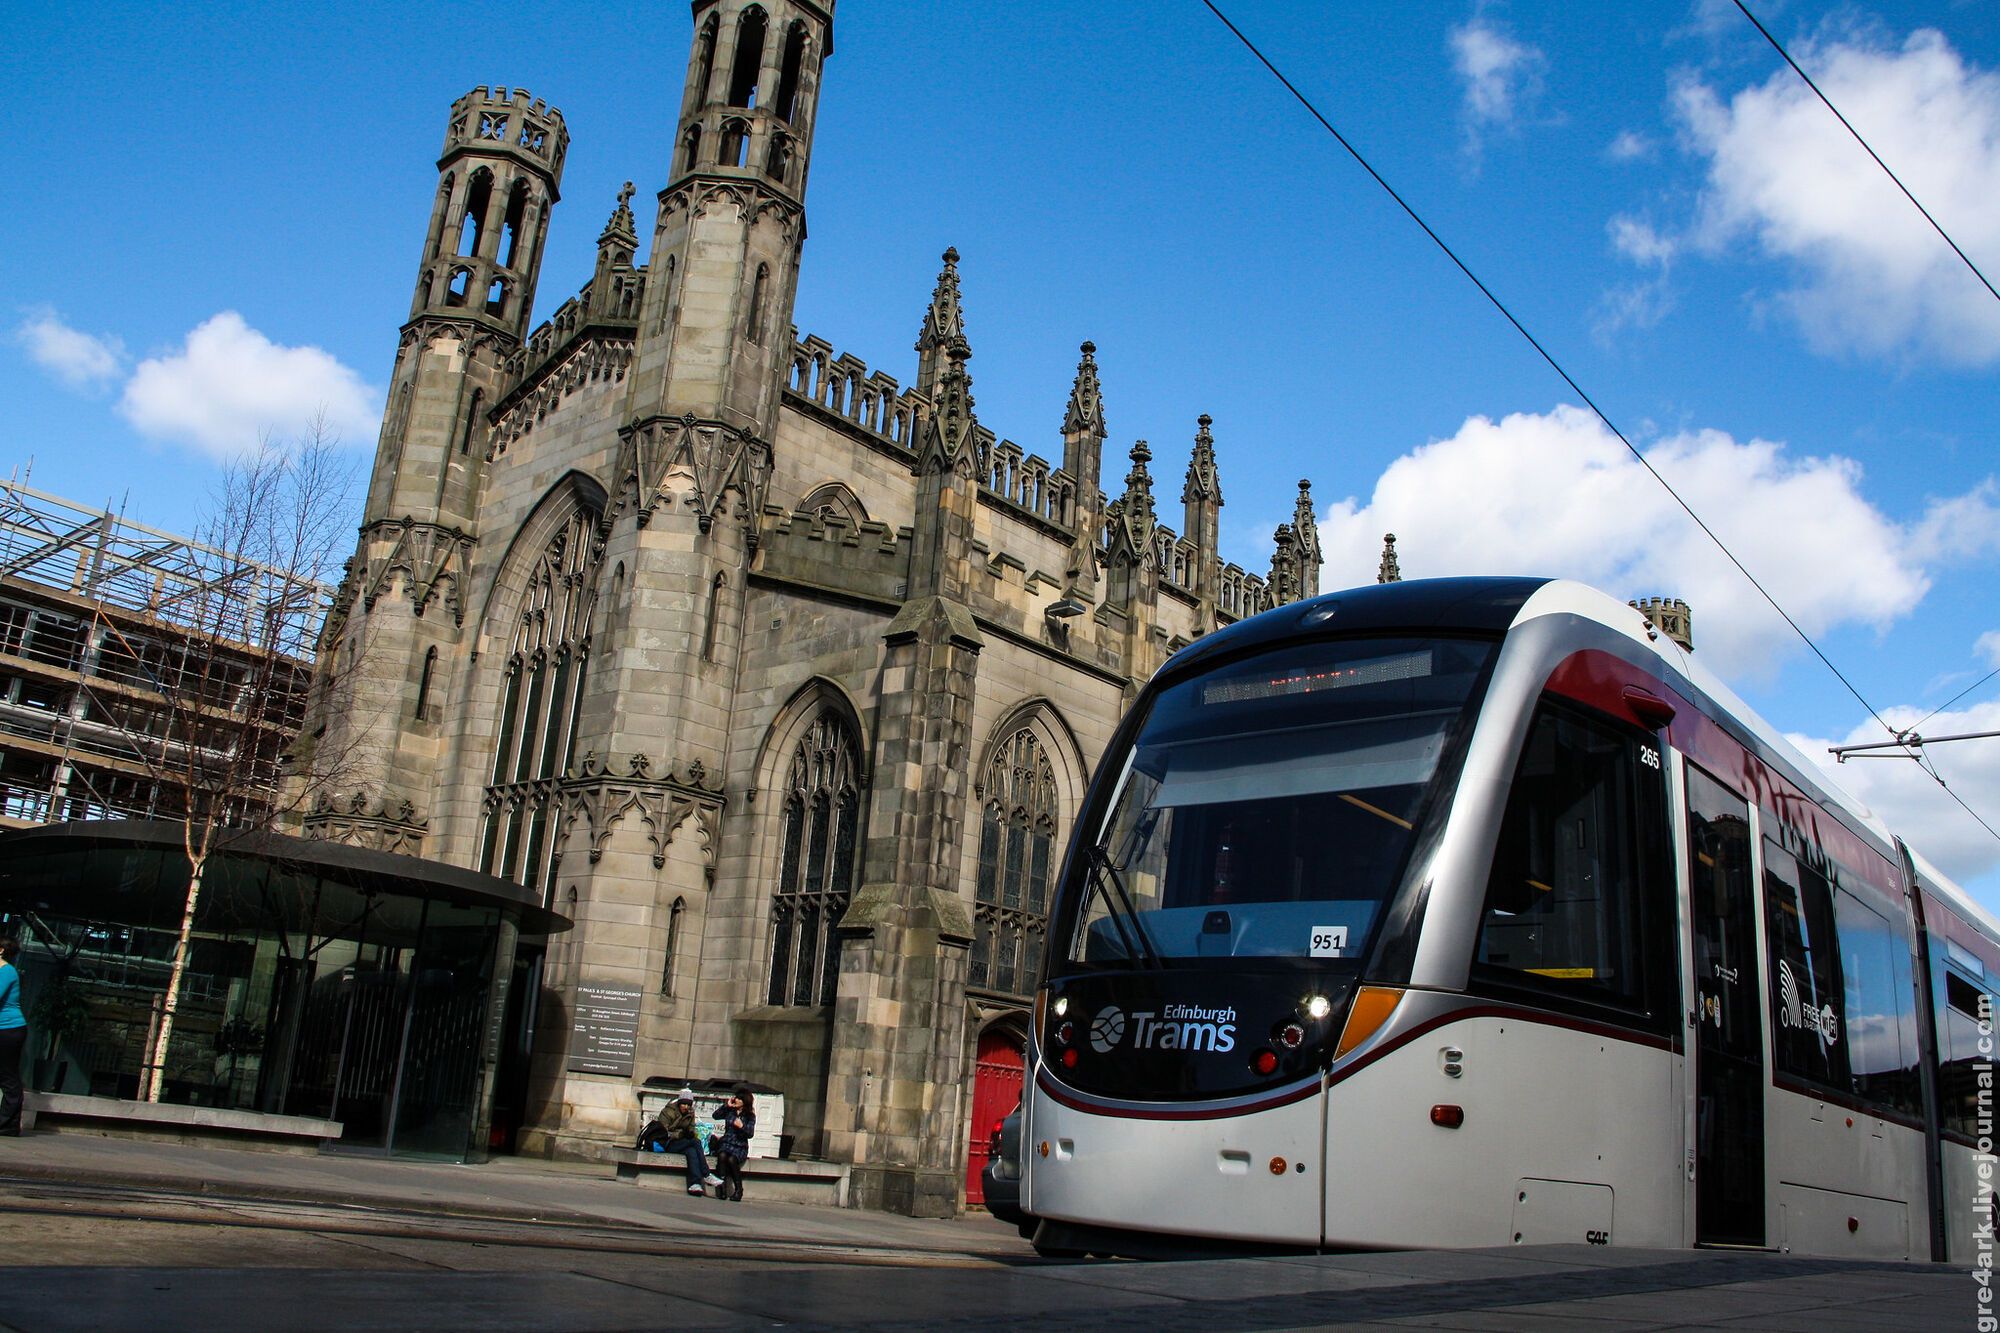 Как загнивает Европа: трамвай Эдинбурга